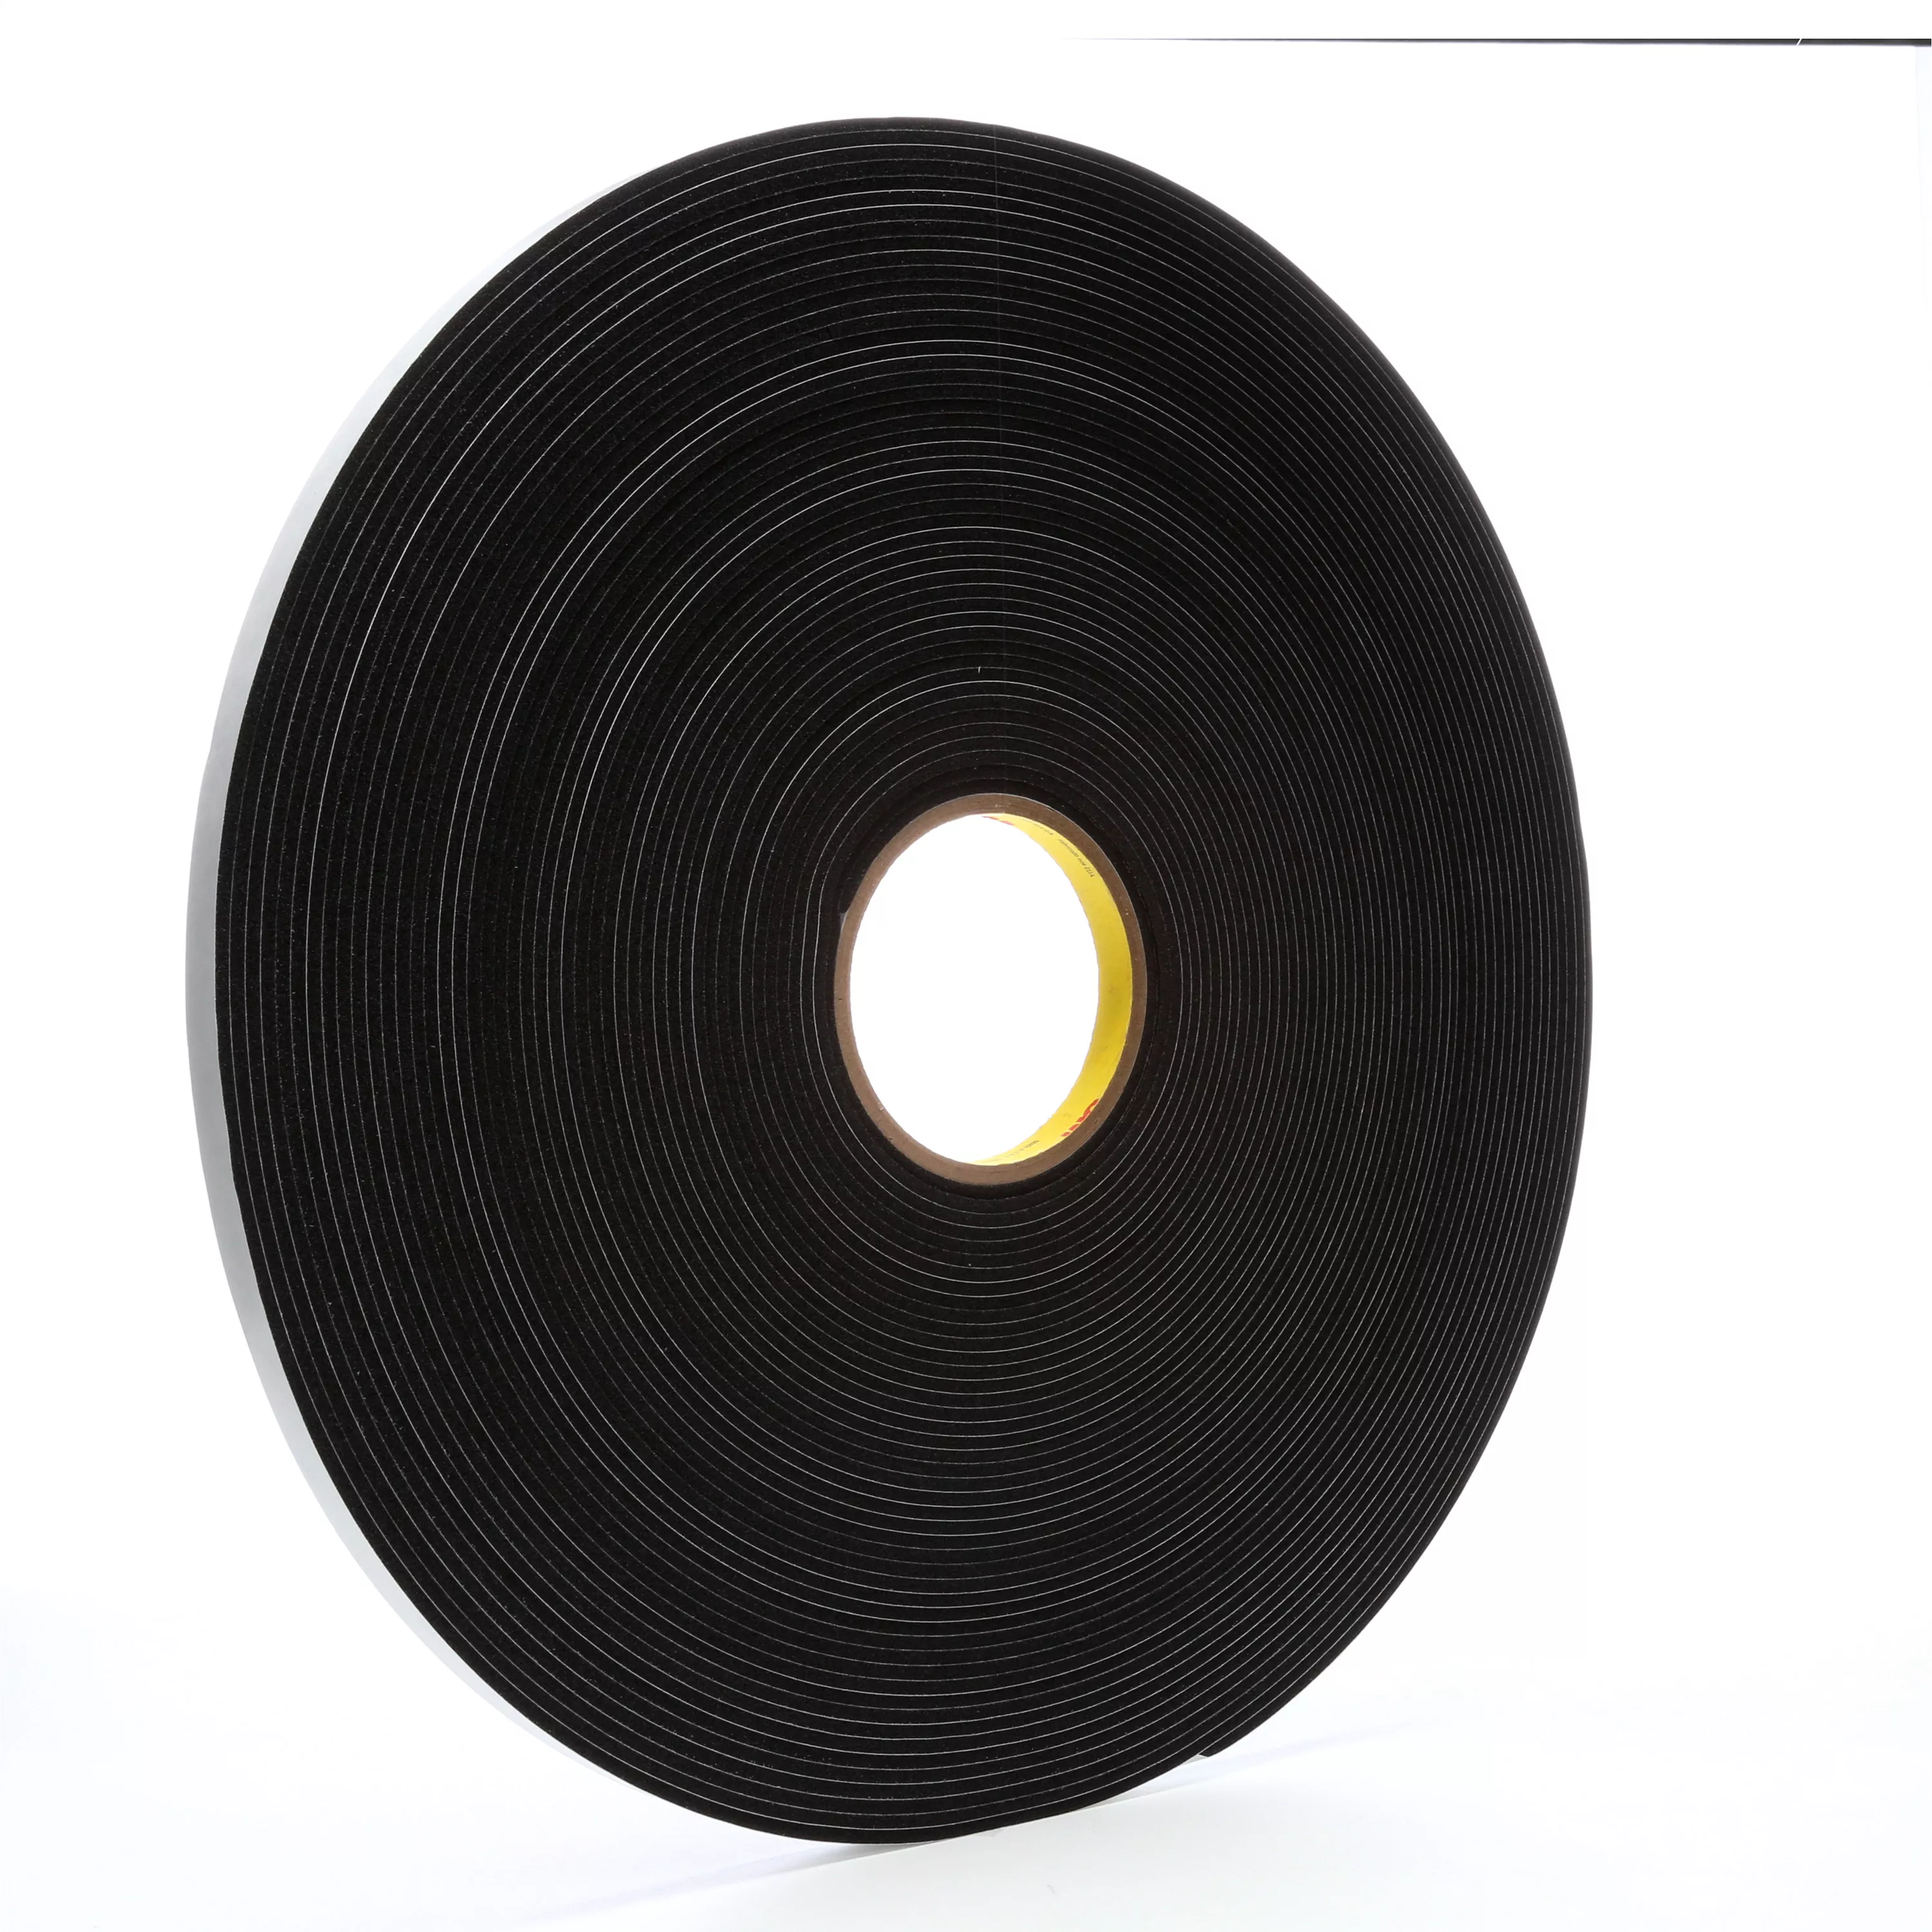 3M™ Vinyl Foam Tape 4508, Black, 1/2 in x 36 yd, 125 mil, 18 Roll/Case